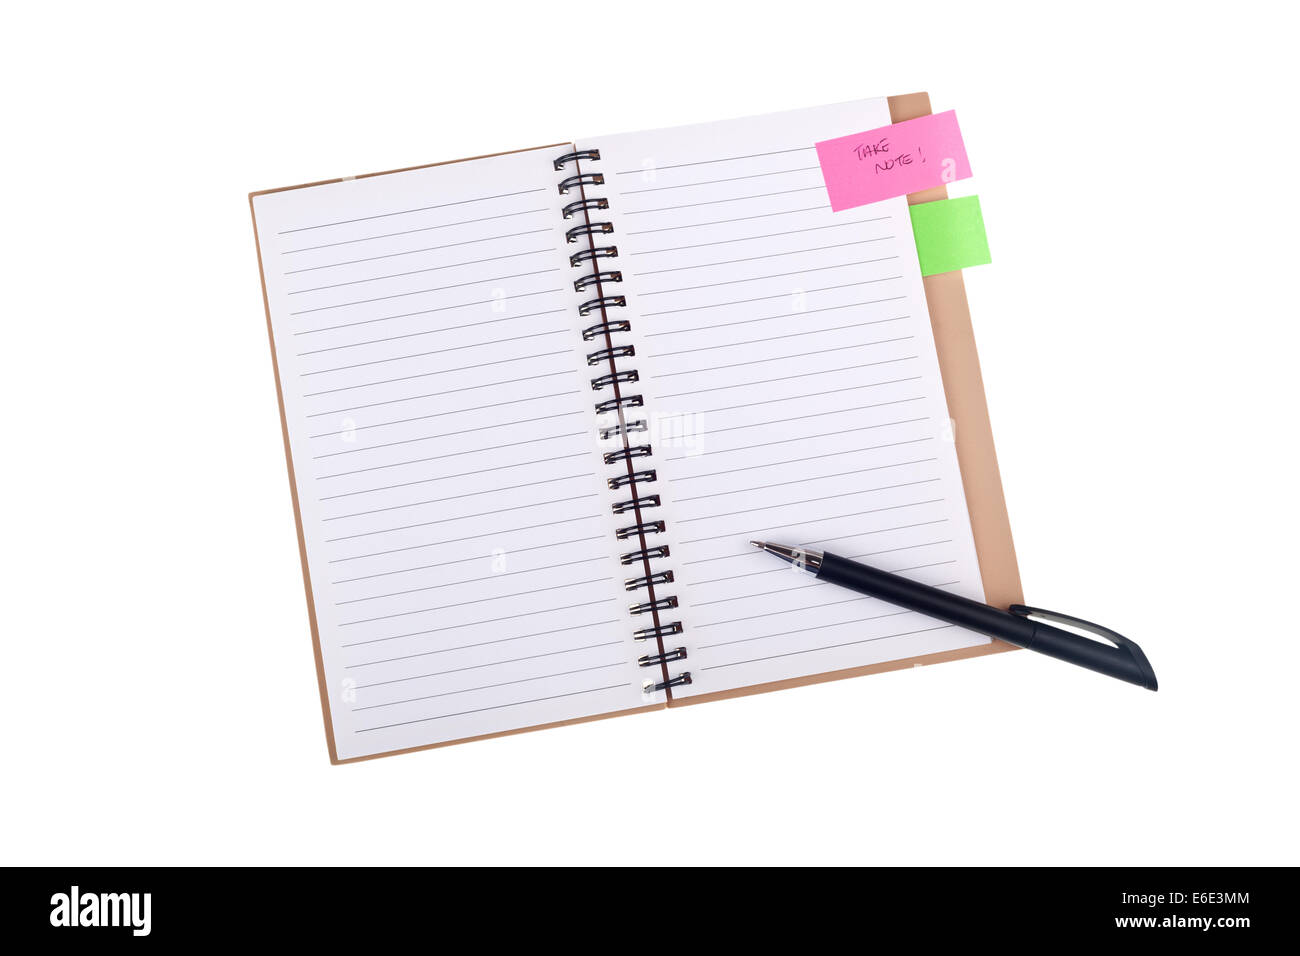 El bloc de notas y lápiz con una 'tomar nota' recordatorio aislado sobre fondo blanco. Foto de stock